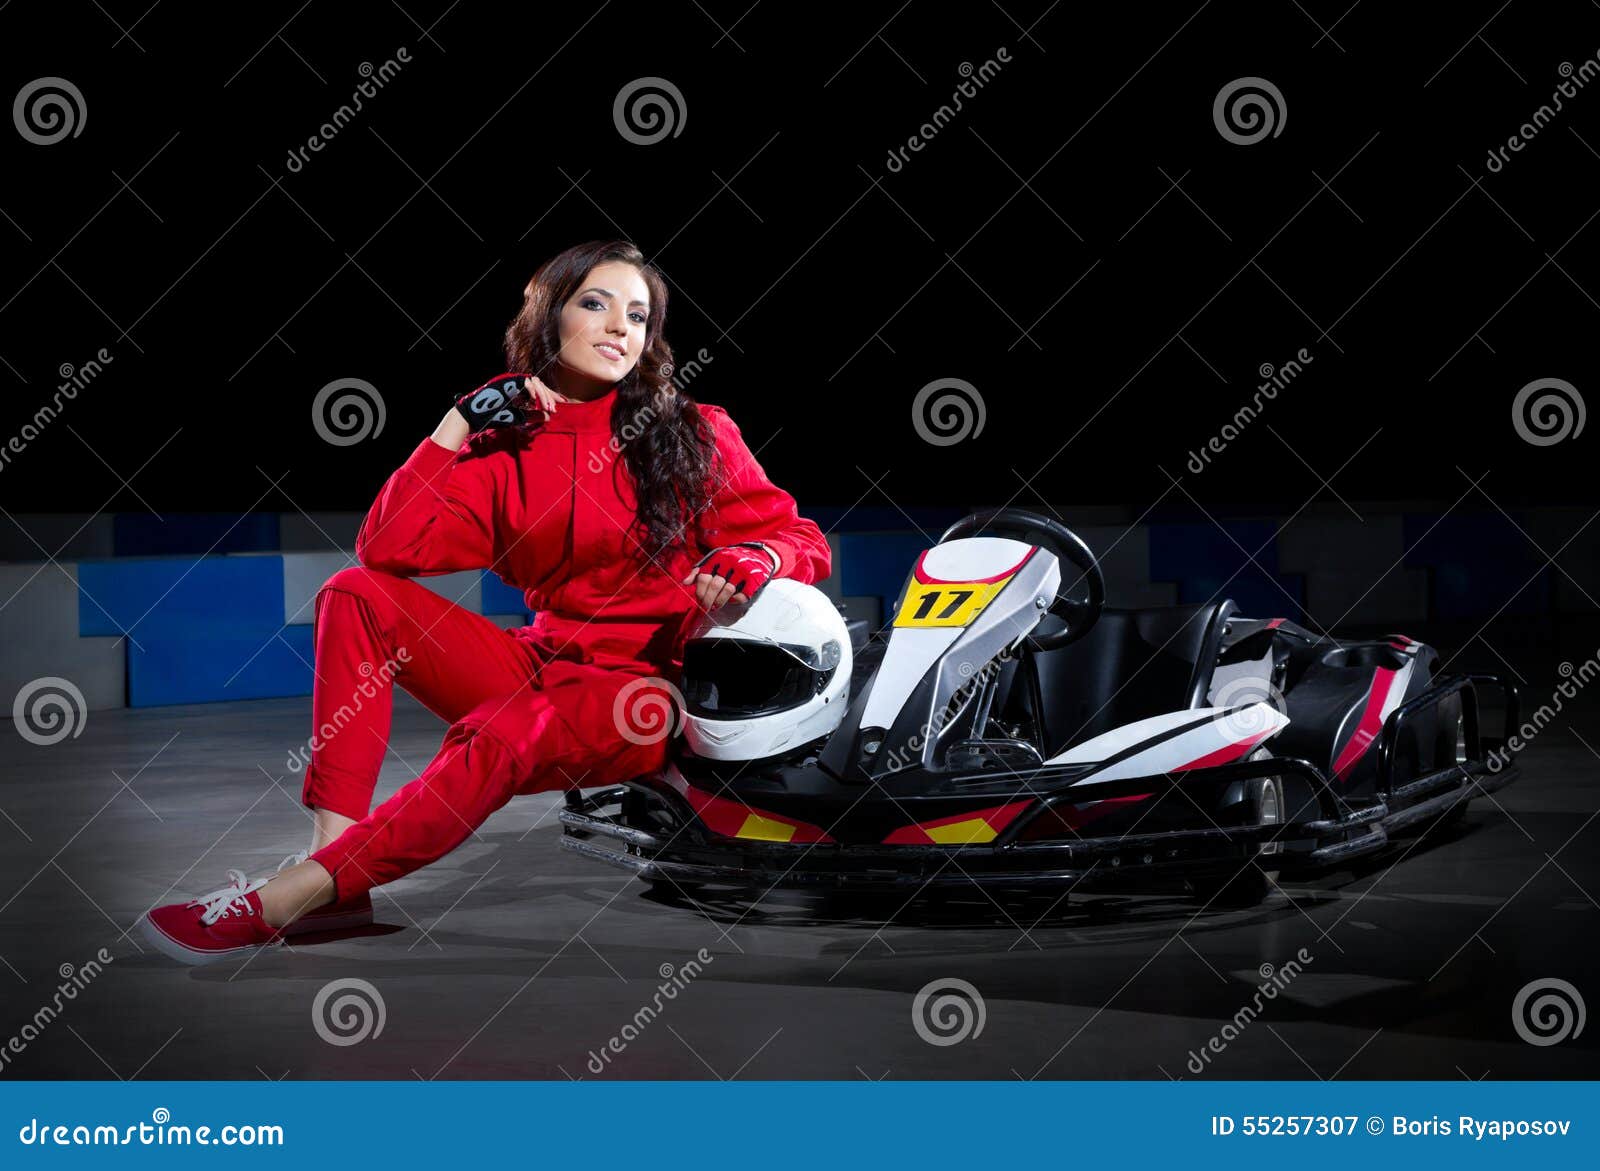 young girl karting racer